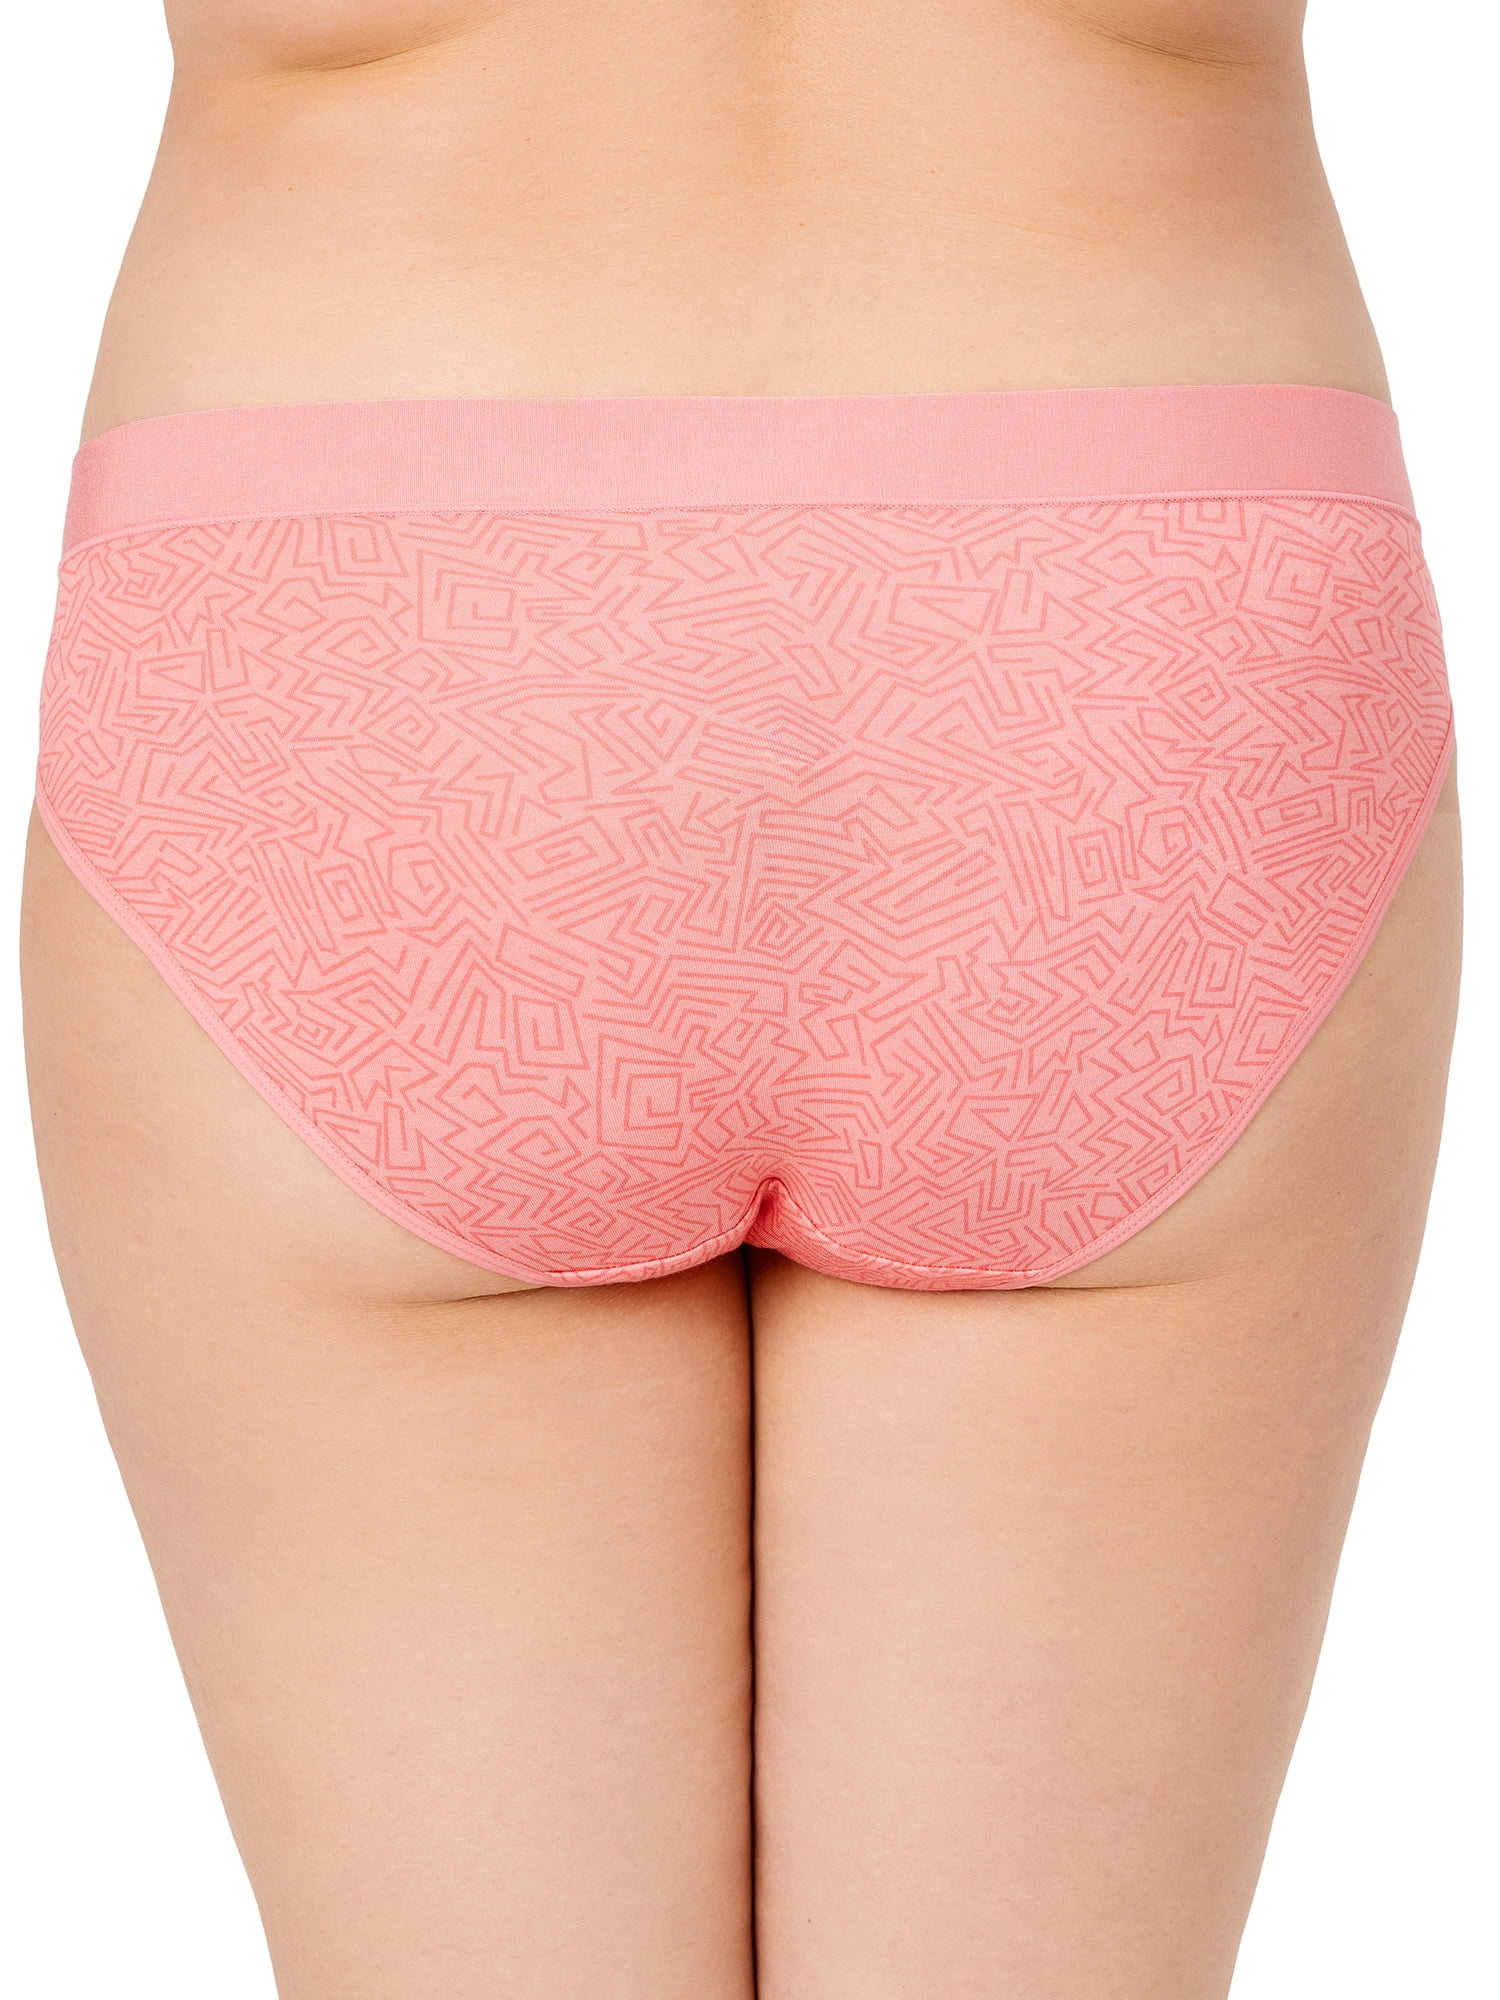 2 Pieces Women Breathable Cotton Briefs Underwear Loose Comfort Underpants  Ladies Panties Sleepwear (Color : Pink2, Size : XXXXL/XXXX-Large)